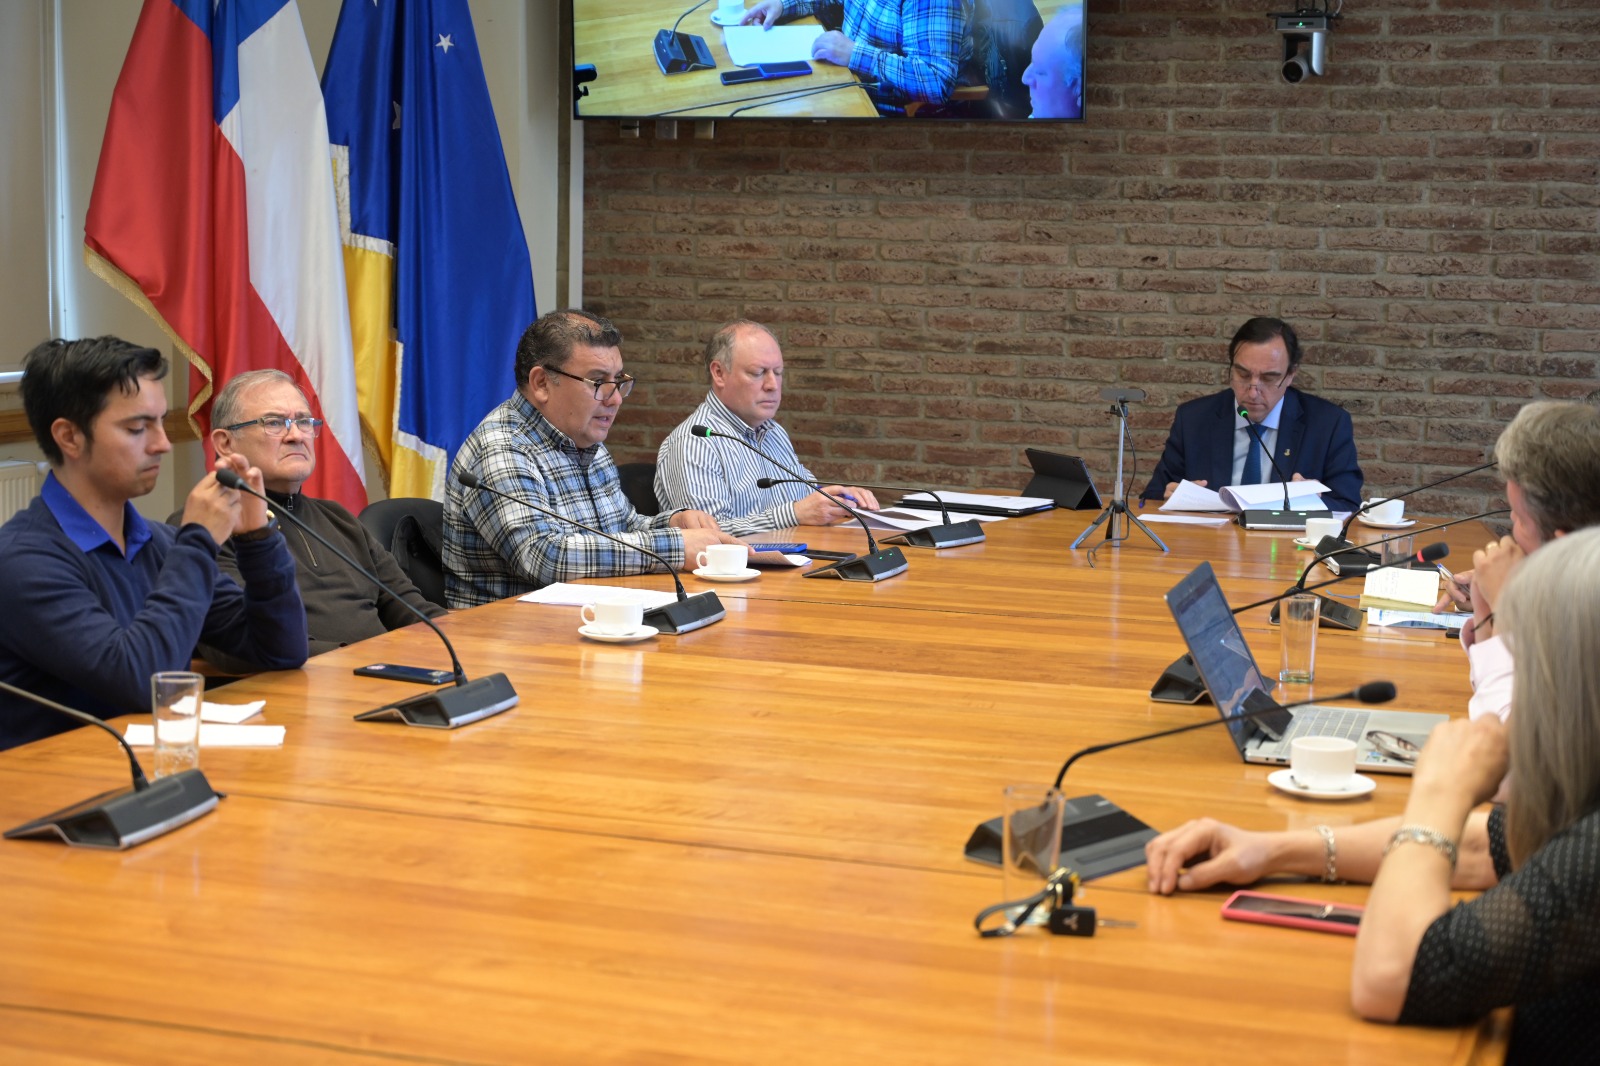 Más de 850 millones de pesos fueron aprobados para diferentes proyectos en el Consejo Regional de Magallanes